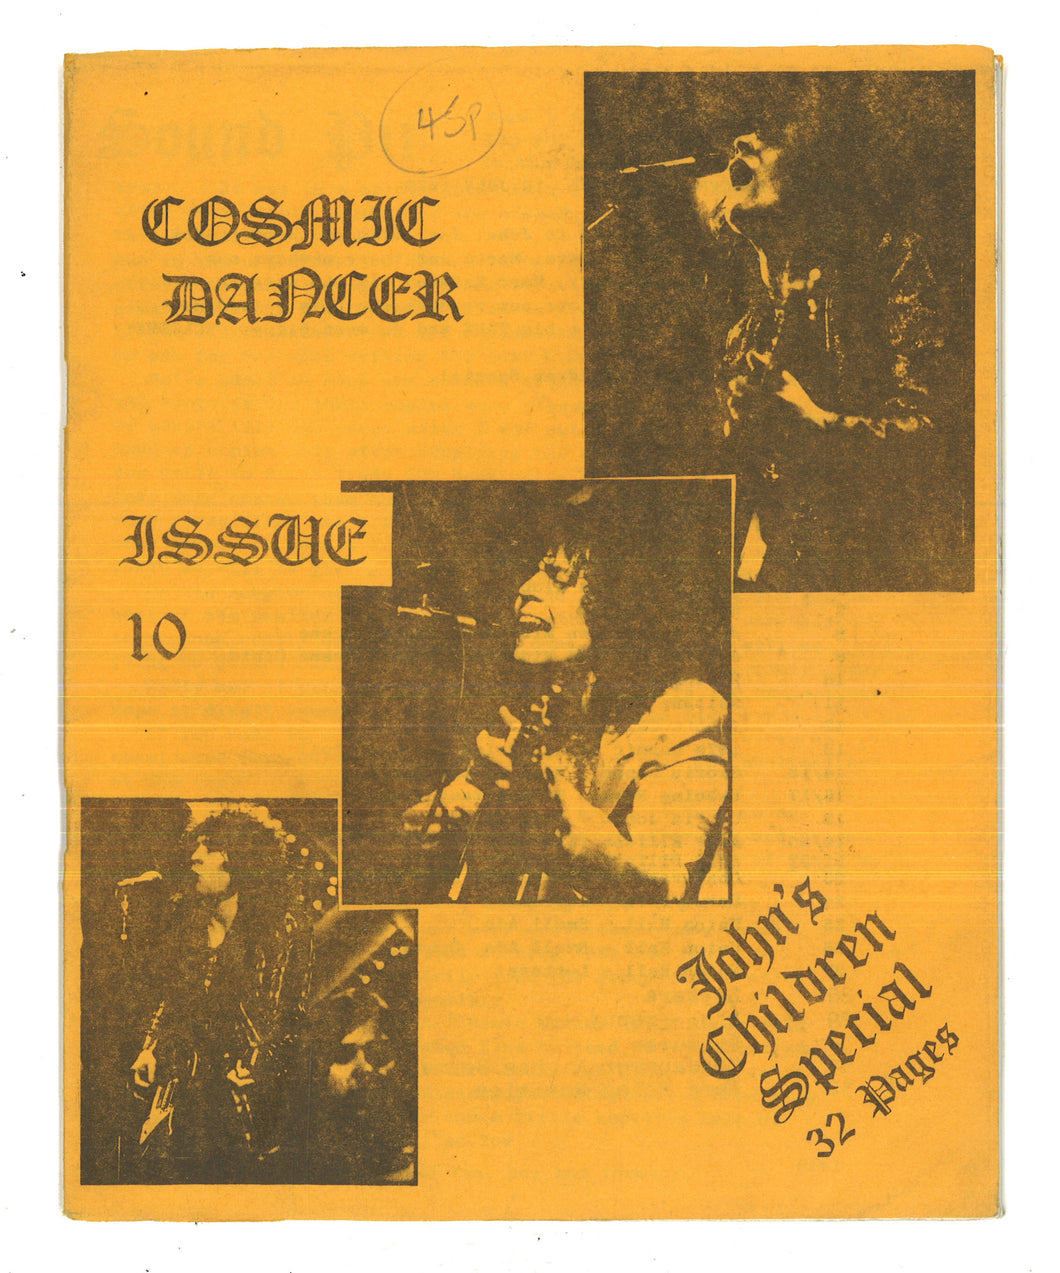 Cosmic Dancer Vol 1 No 10 July 1979